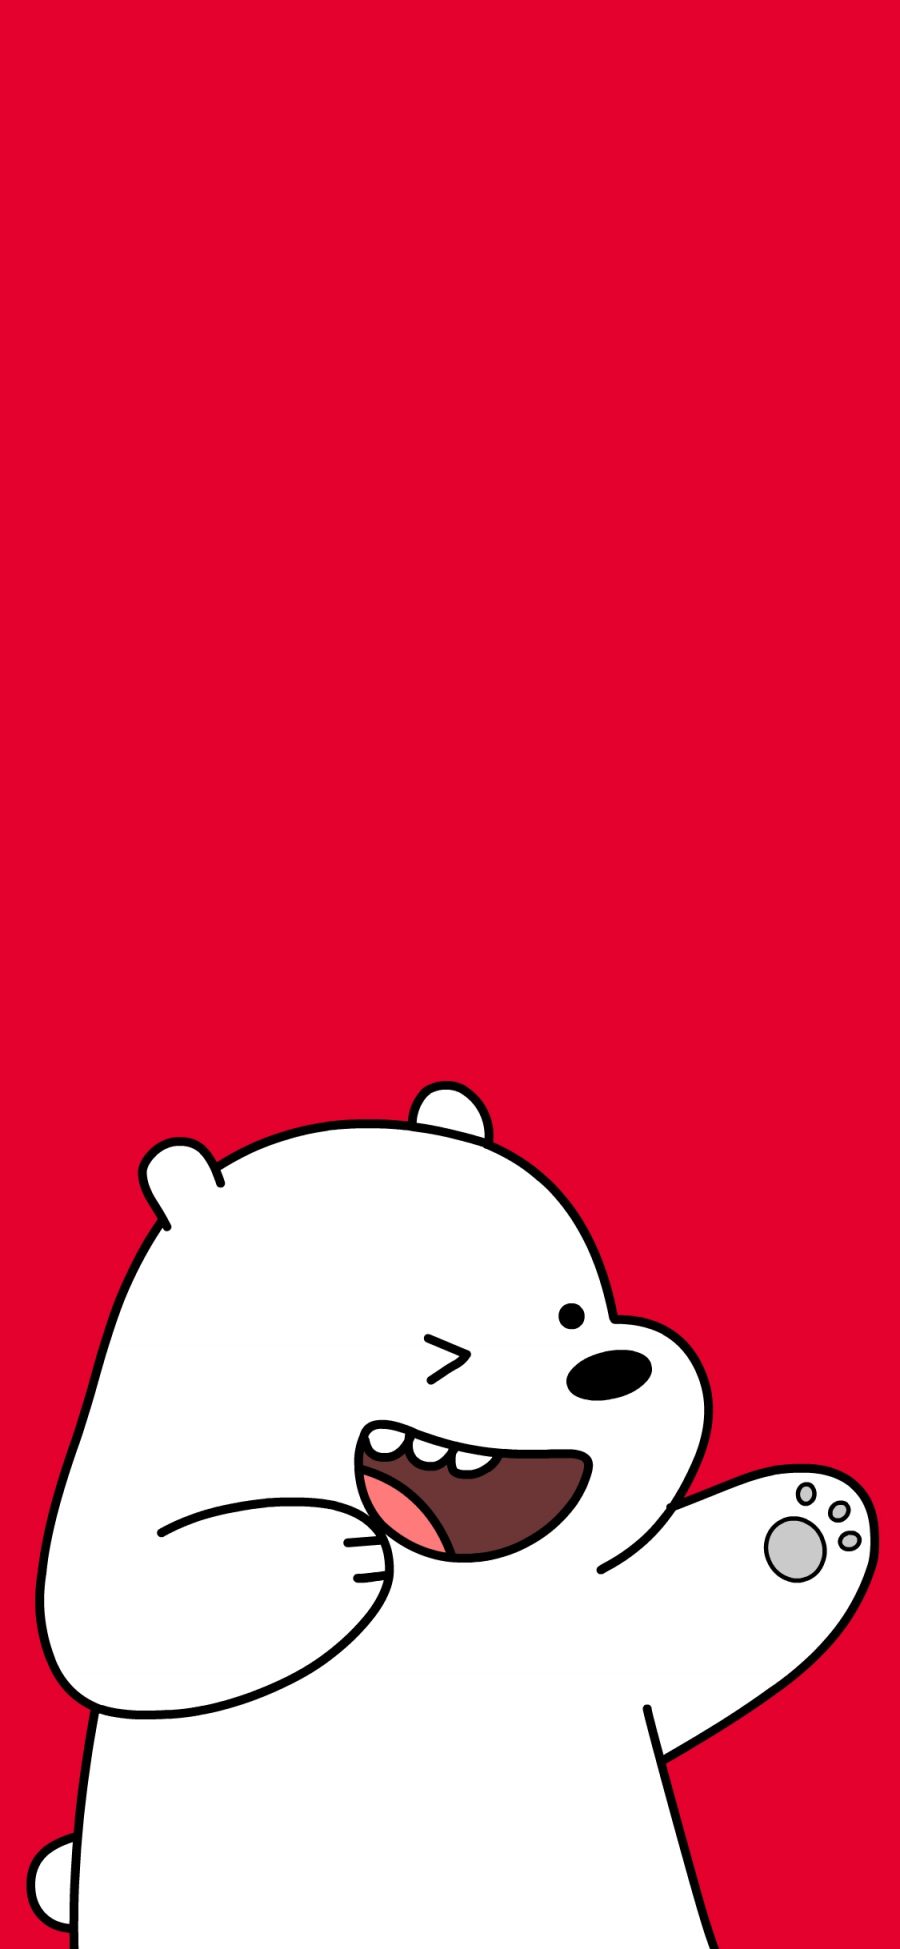 [2436×1125]咱们裸熊 红色 卡通 动画 北极熊 可爱 苹果手机动漫壁纸图片